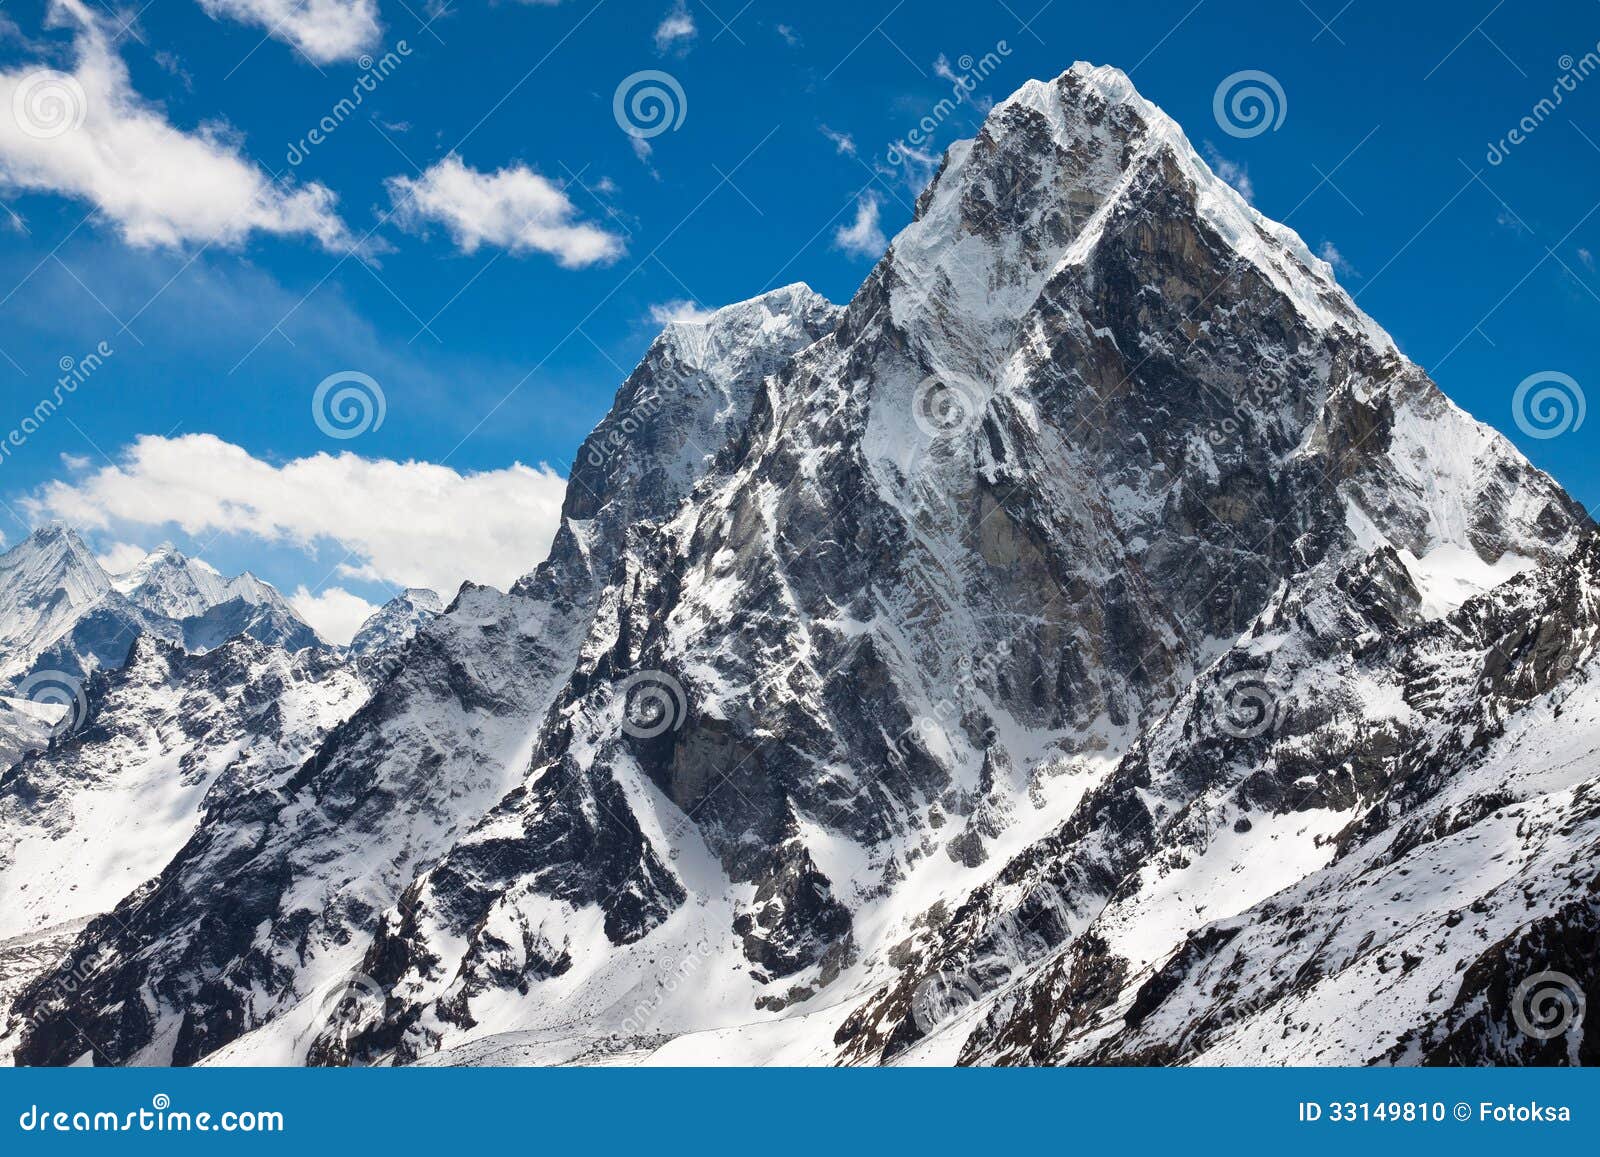 summit cholatse and tabuche peak. himalayas. nepal